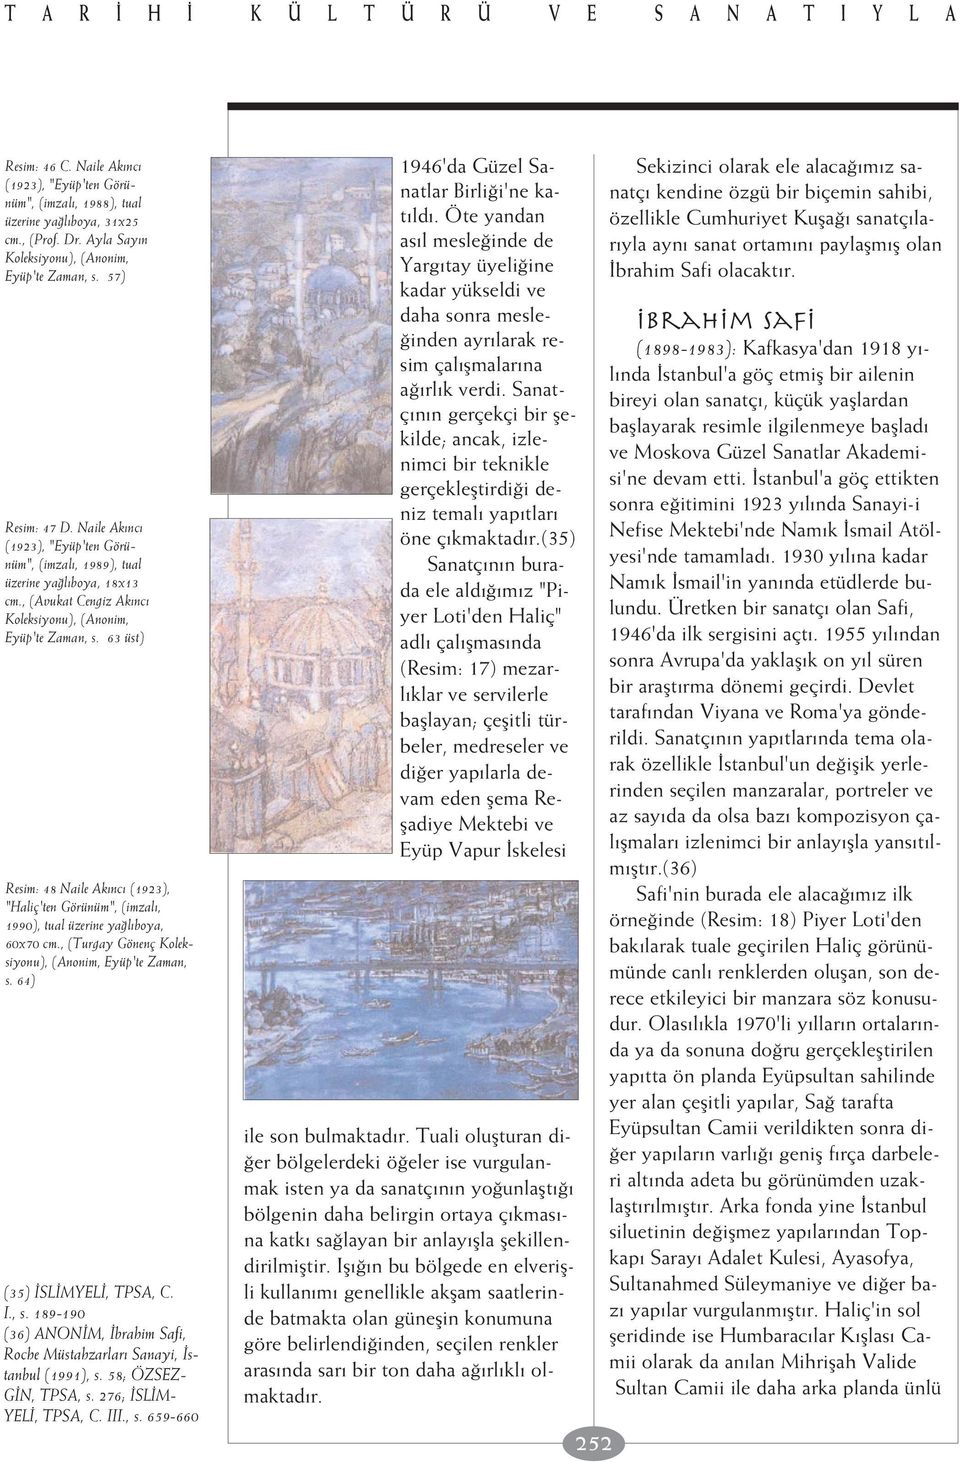 , (Avukat Cengiz Ak nc Koleksiyonu), (Anonim, Eyüp'te Zaman, s. 63 üst) Resim: 48 Naile Ak nc (1923), "Haliç'ten Görünüm", (imzal, 1990), tual üzerine ya l boya, 60x70 cm.